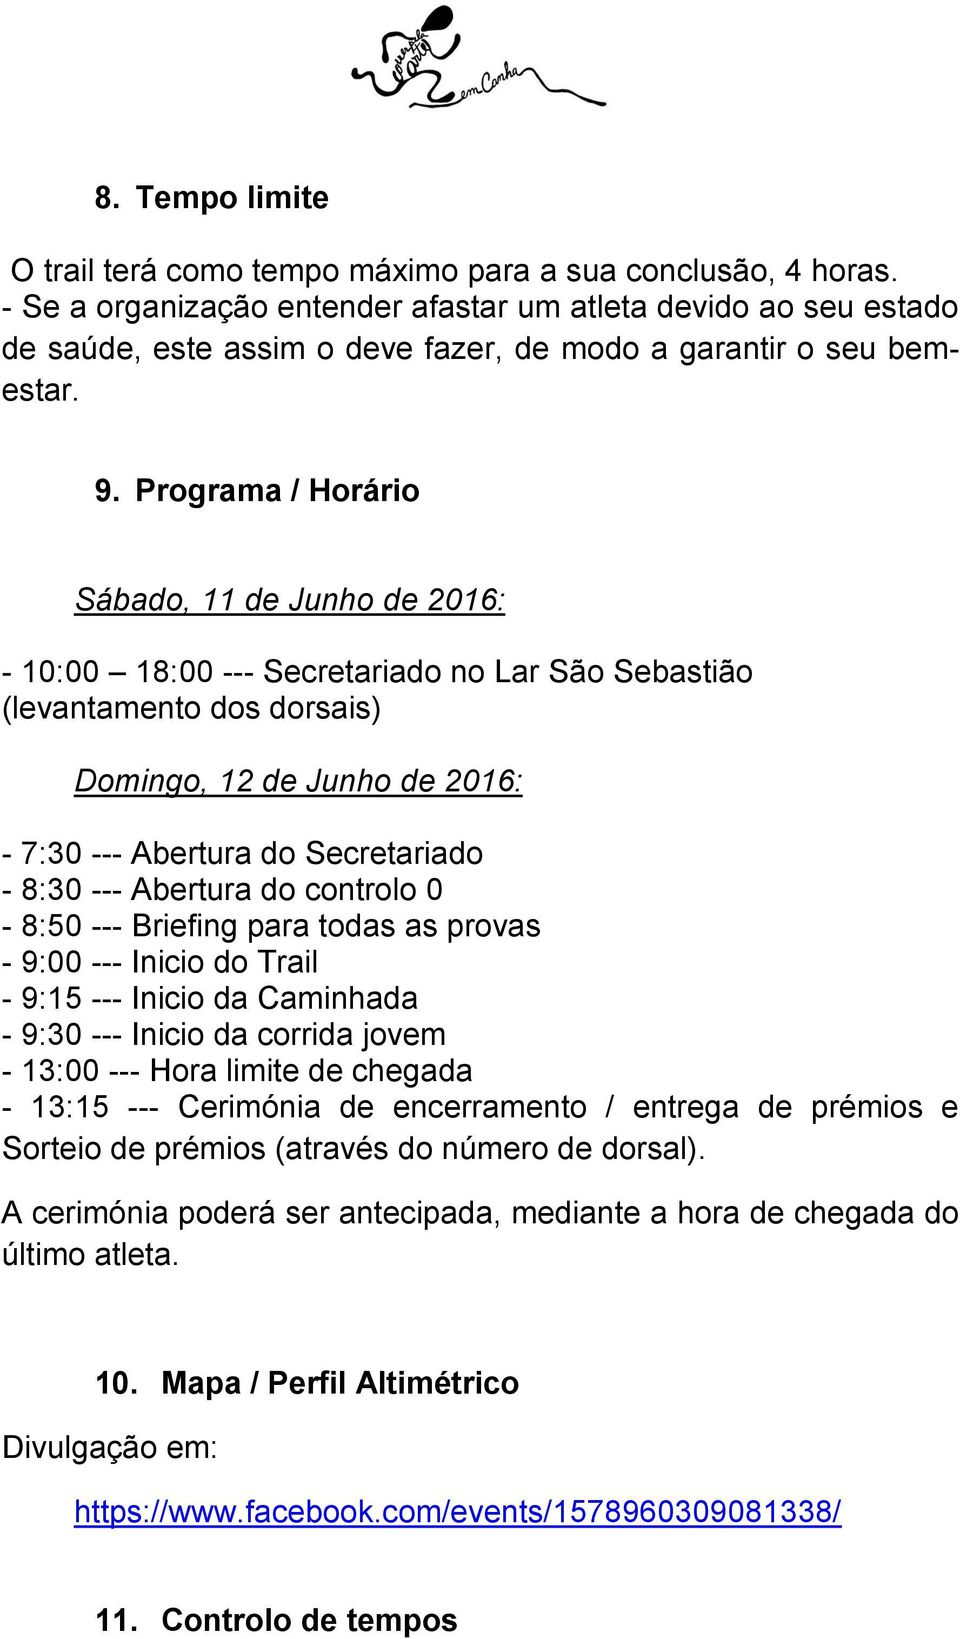 Programa / Horário Sábado, 11 de Junho de 2016: - 10:00 18:00 --- Secretariado no Lar São Sebastião (levantamento dos dorsais) Domingo, 12 de Junho de 2016: - 7:30 --- Abertura do Secretariado - 8:30